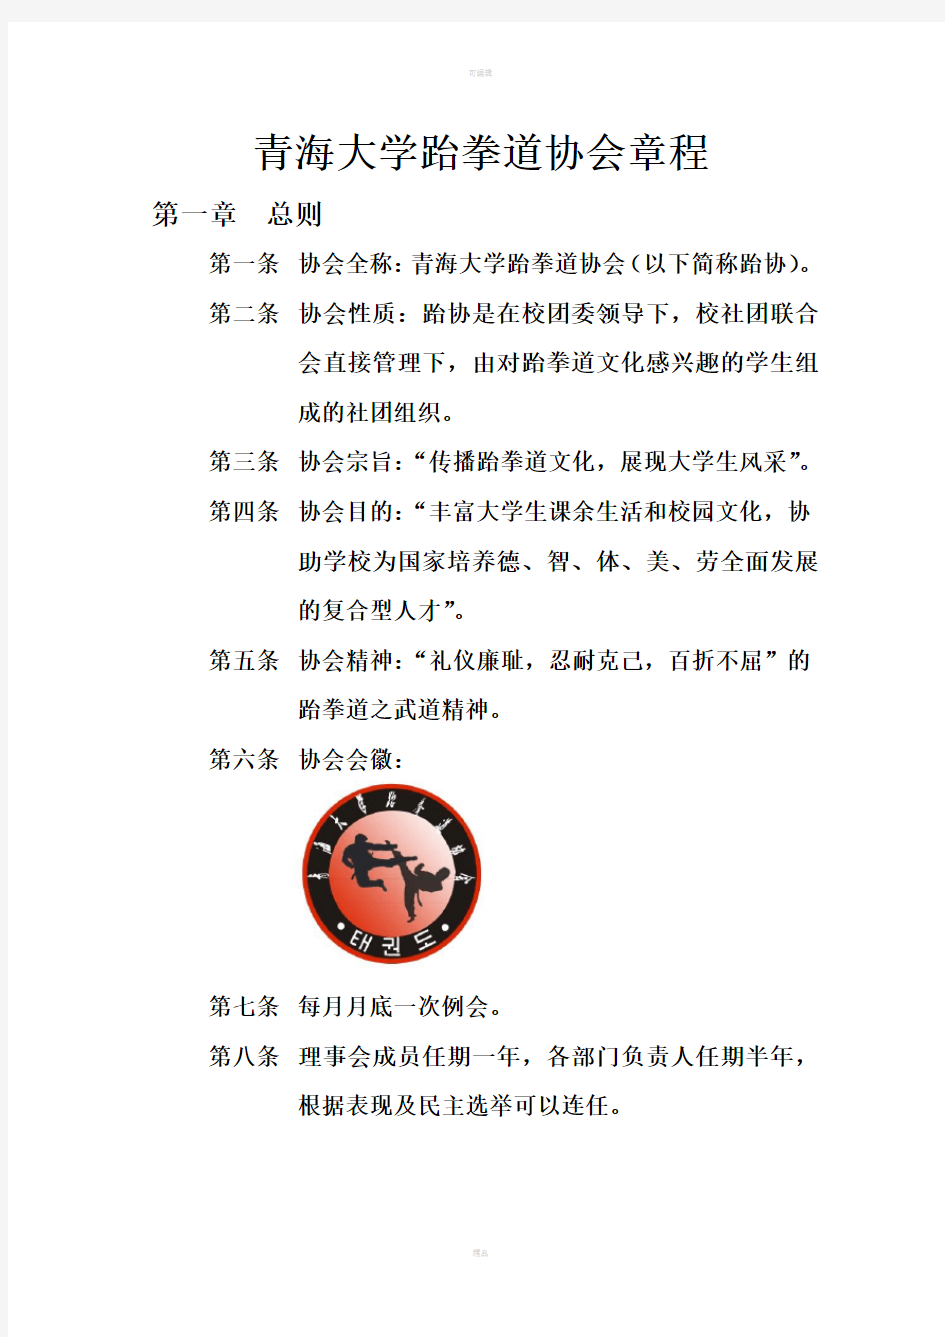 青海大学跆拳道协会章程